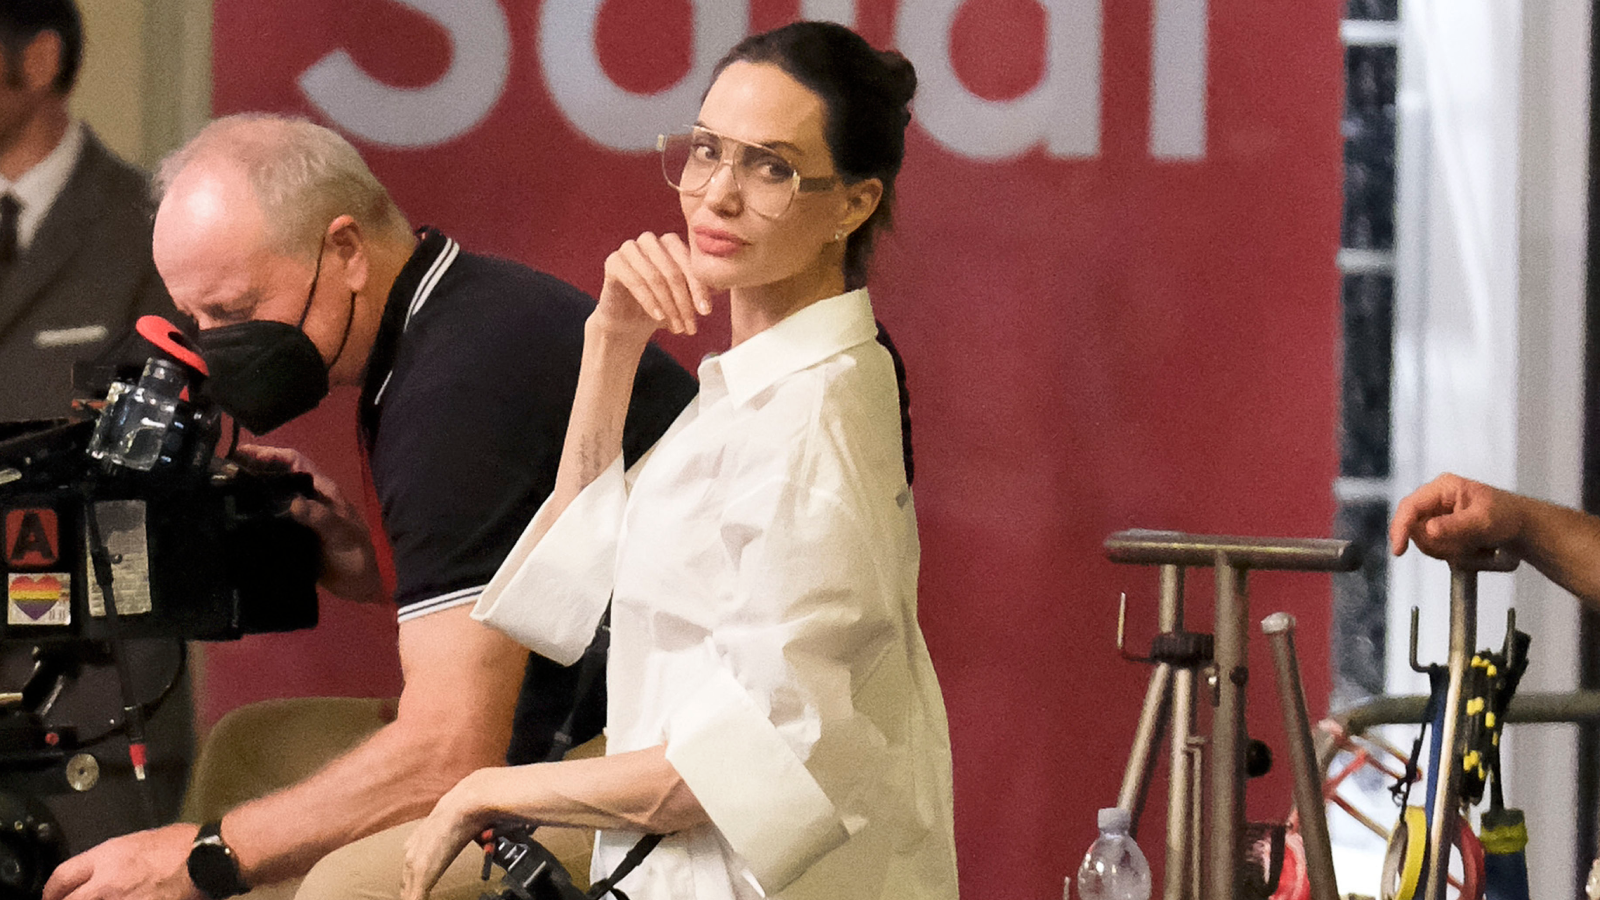 Angelina Jolie Wears Valentino Pajamas to the Airport: Photos